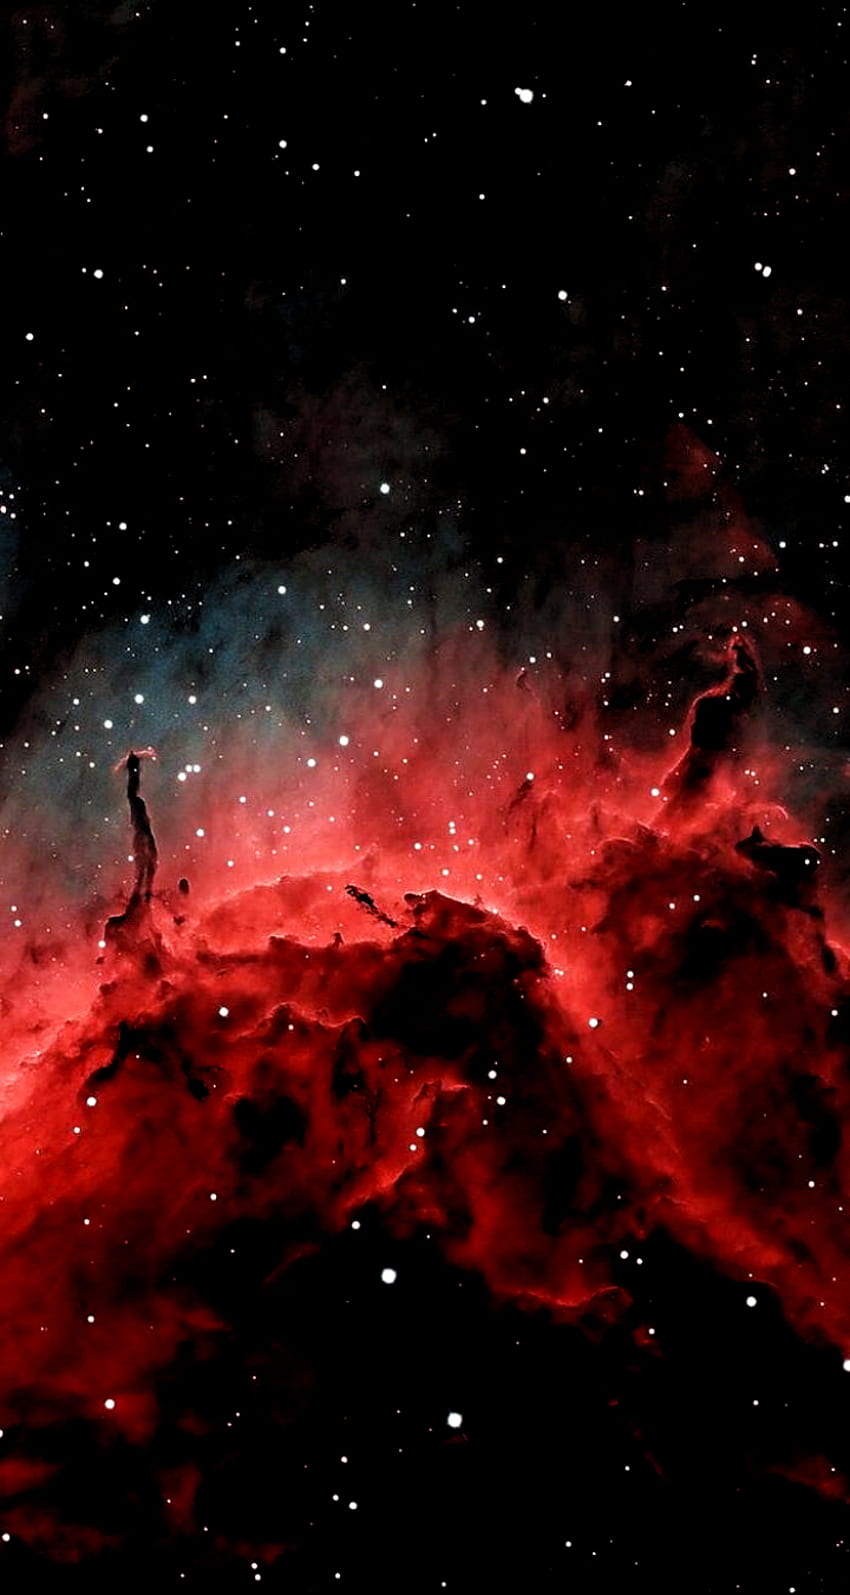 Thiên hà đen đỏ mê hoặc tạo nên một không gian sống thật đặc biệt và tuyệt vời. Hãy đến để chìm đắm trong vẻ đẹp bất tận của Thiên hà đen đỏ!